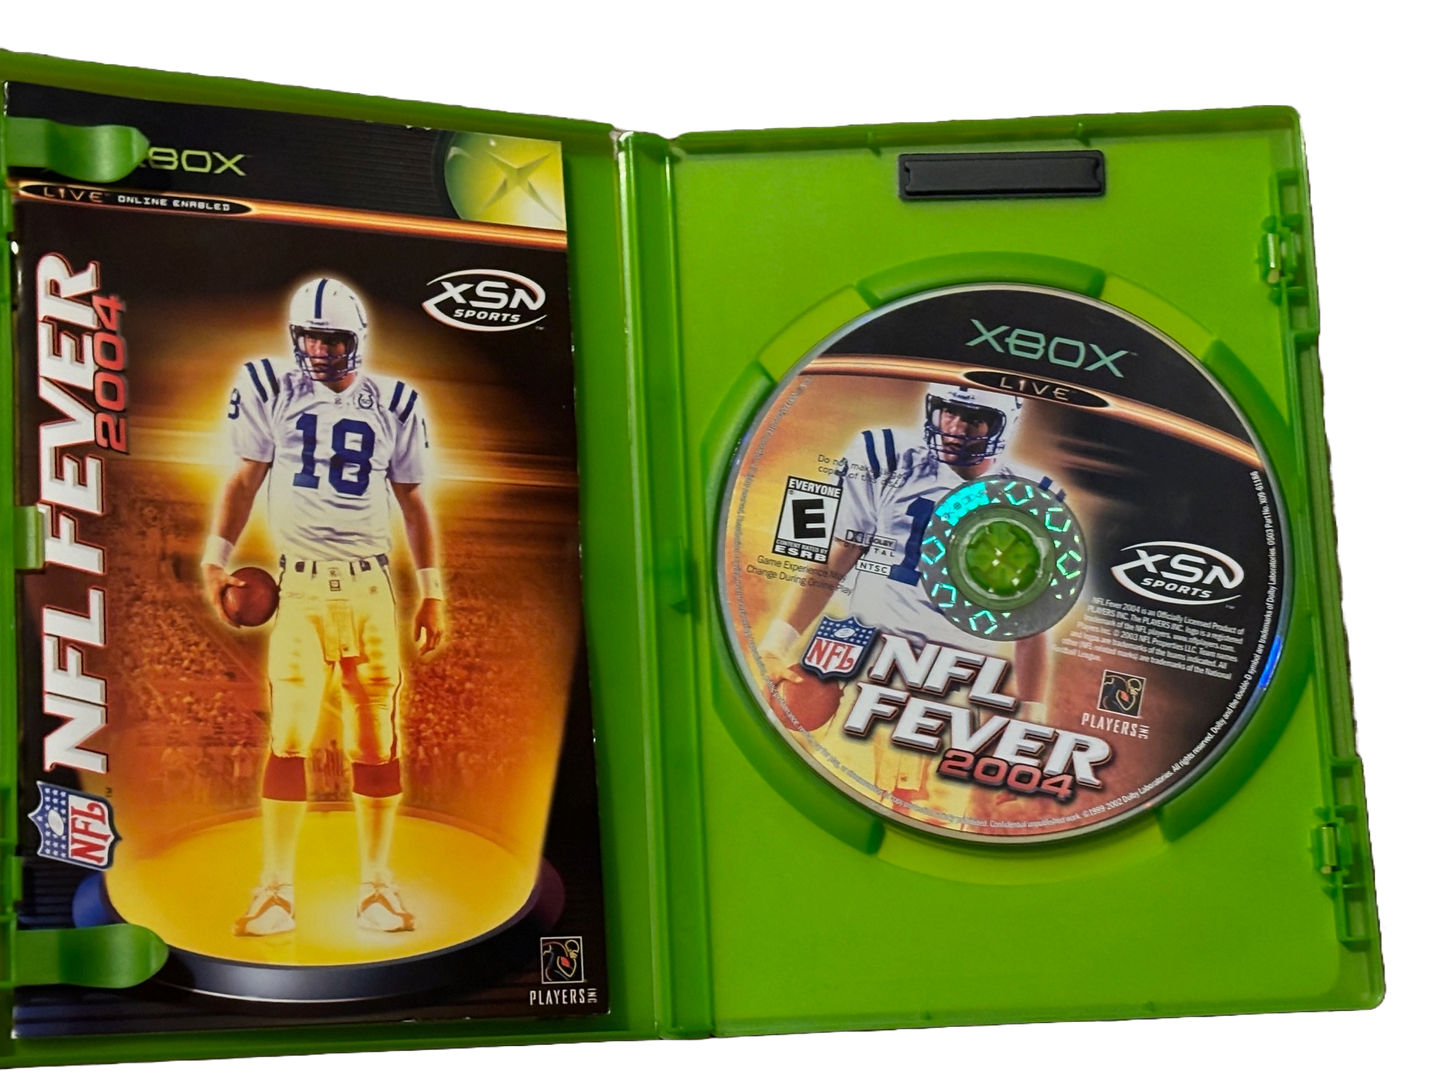 NFL Fever 2004 Original Microsoft Xbox Video Game